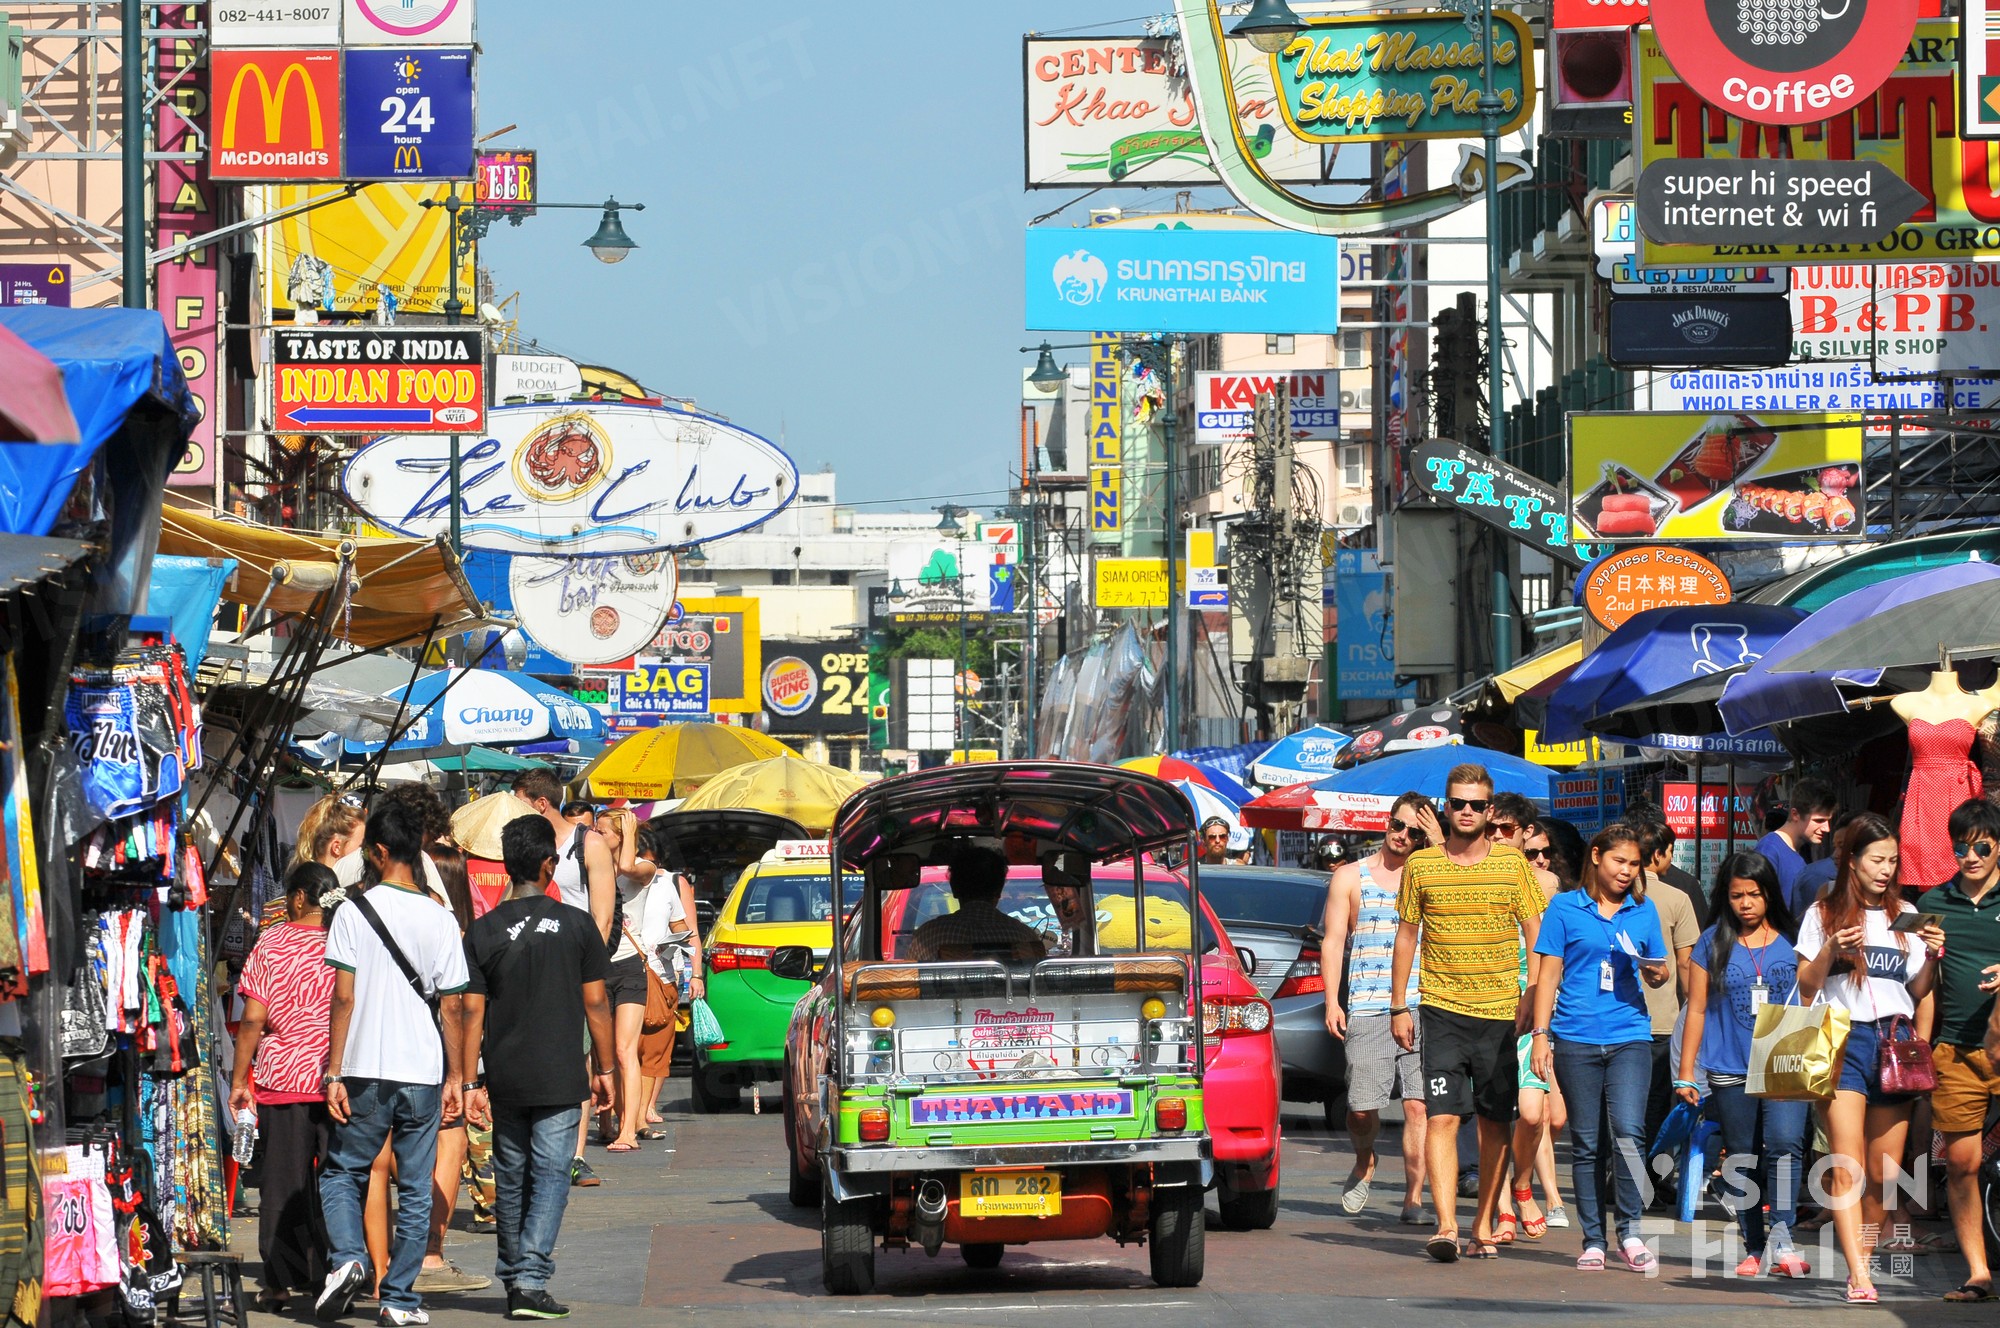 2019考山路夜市_旅游攻略_门票_地址_游记点评,曼谷旅游景点推荐 - 去哪儿攻略社区